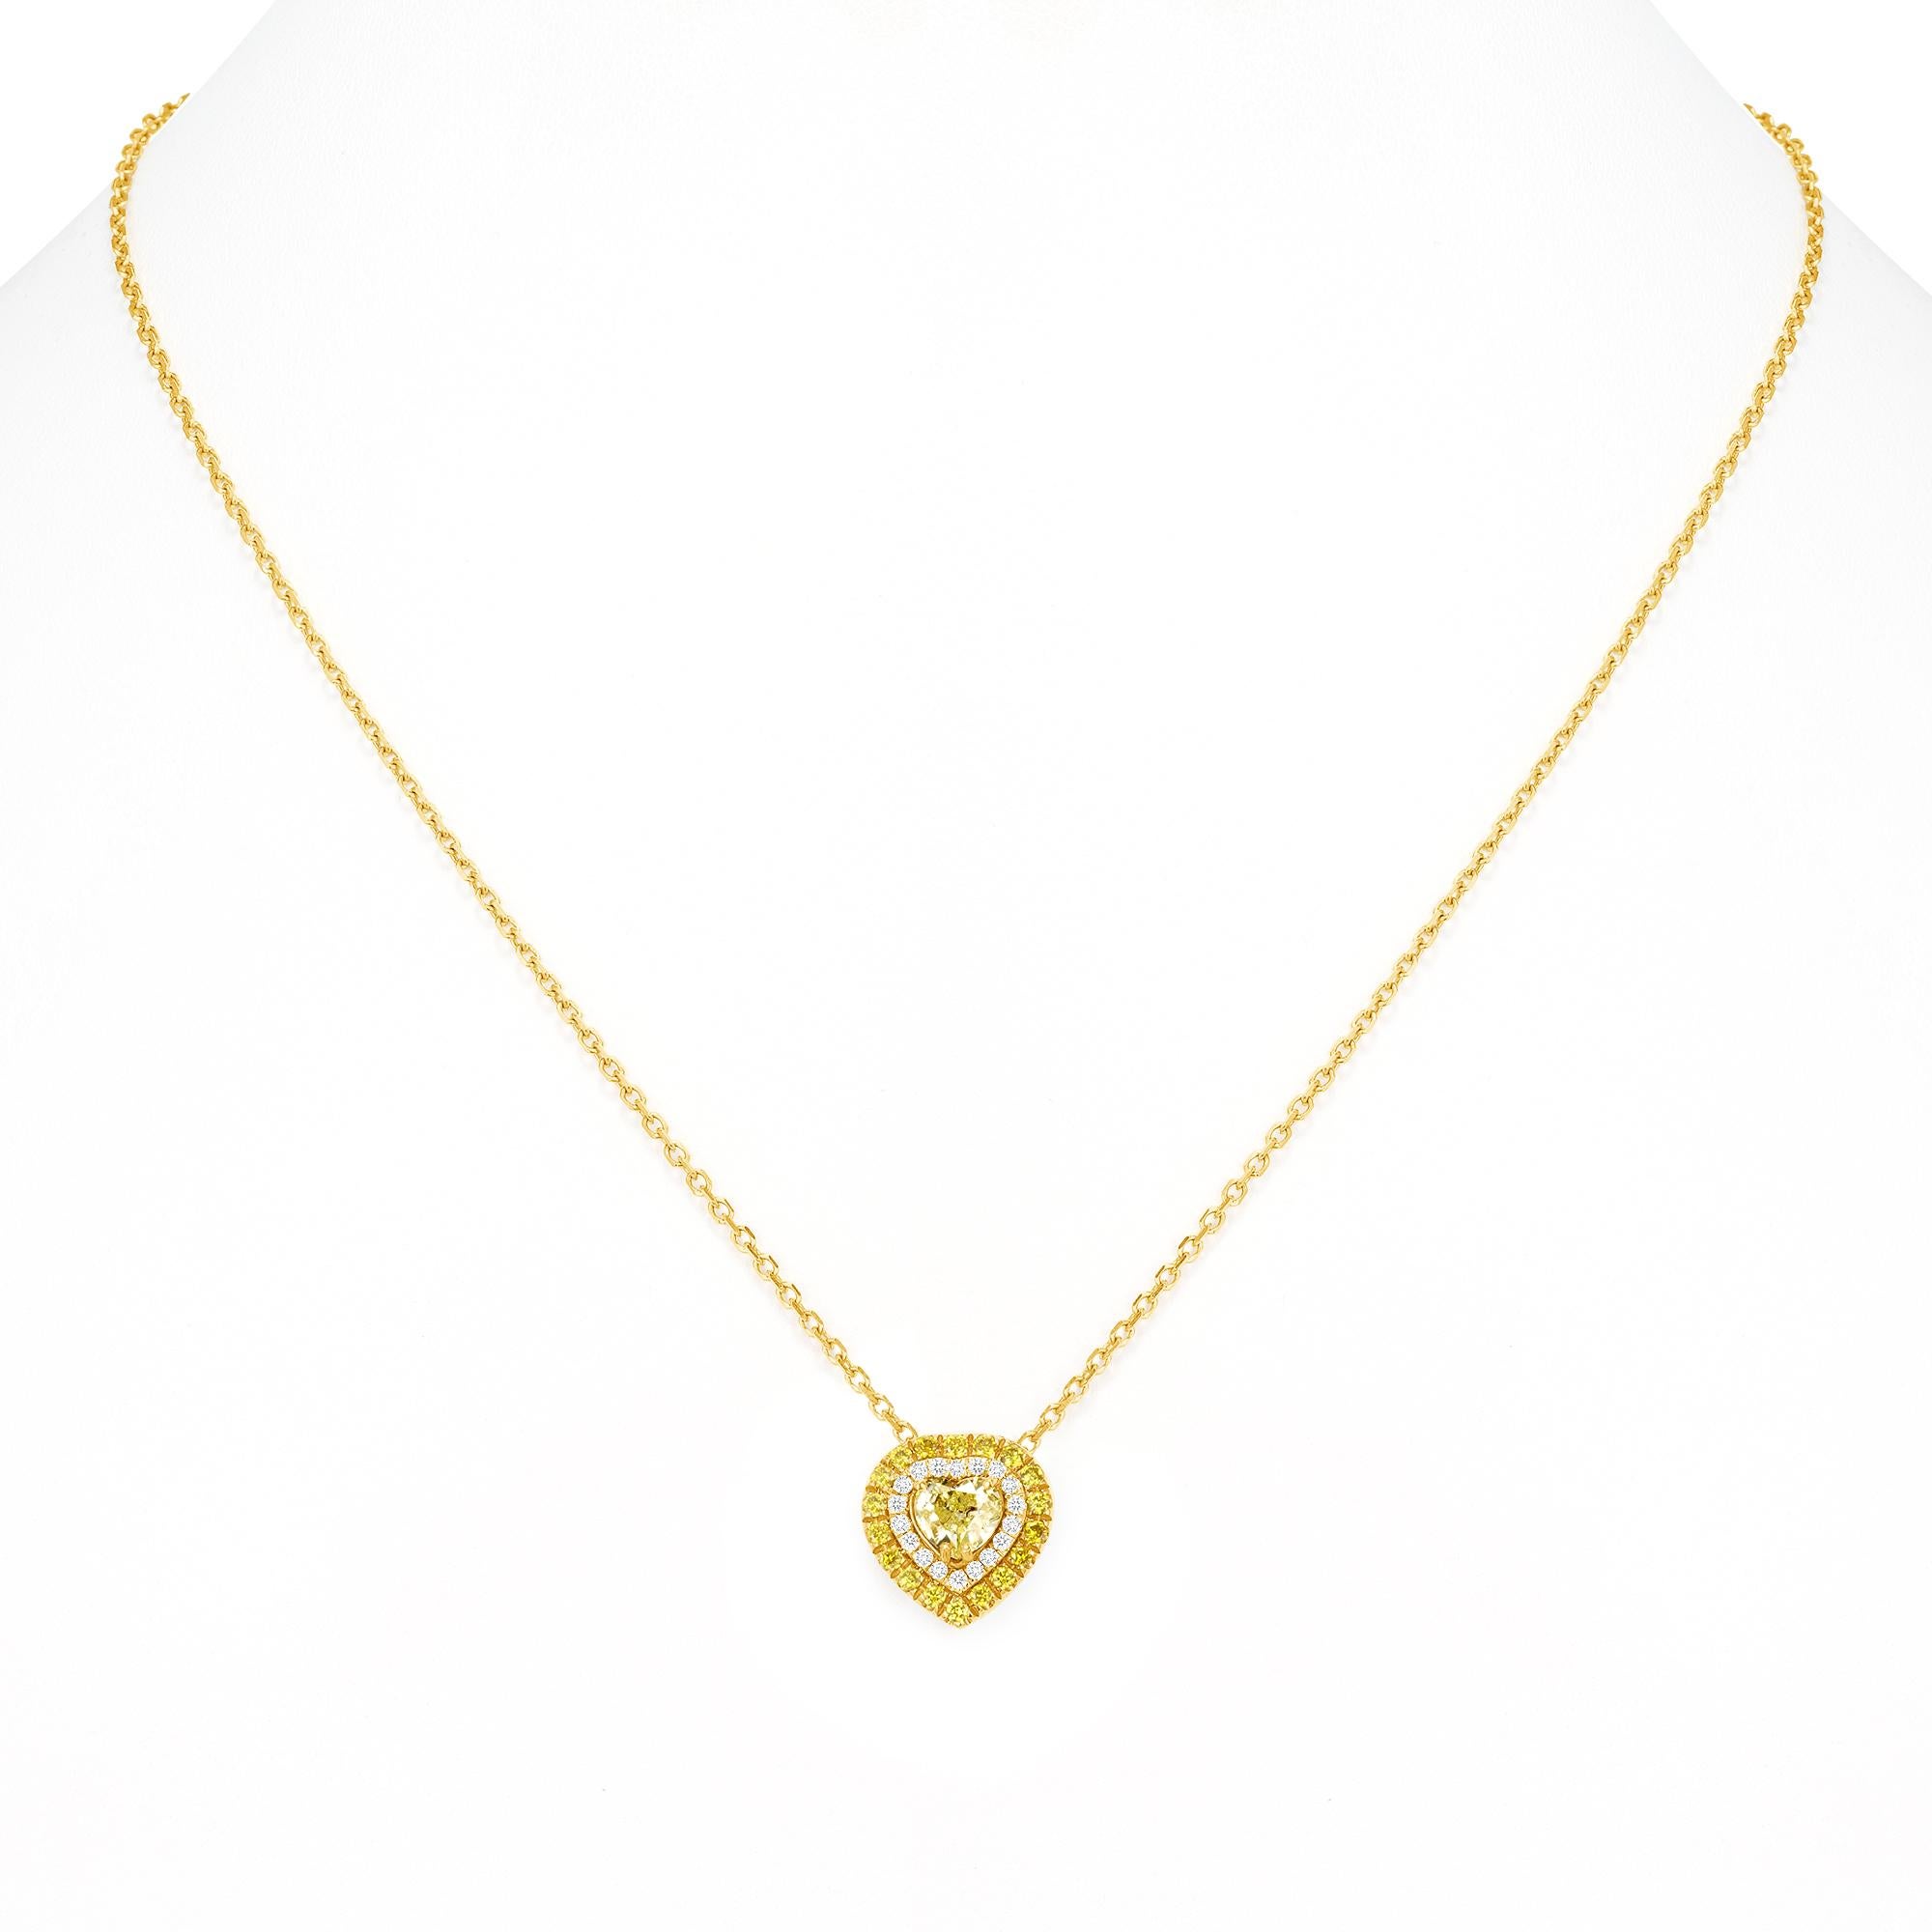 Herz-Anhänger-Halskette mit einem halben Karat 
Gelber echter und natürlicher Diamant im ausgefallenen Design
.67 runde Brillantdiamanten rund um den Mittelstein herum.